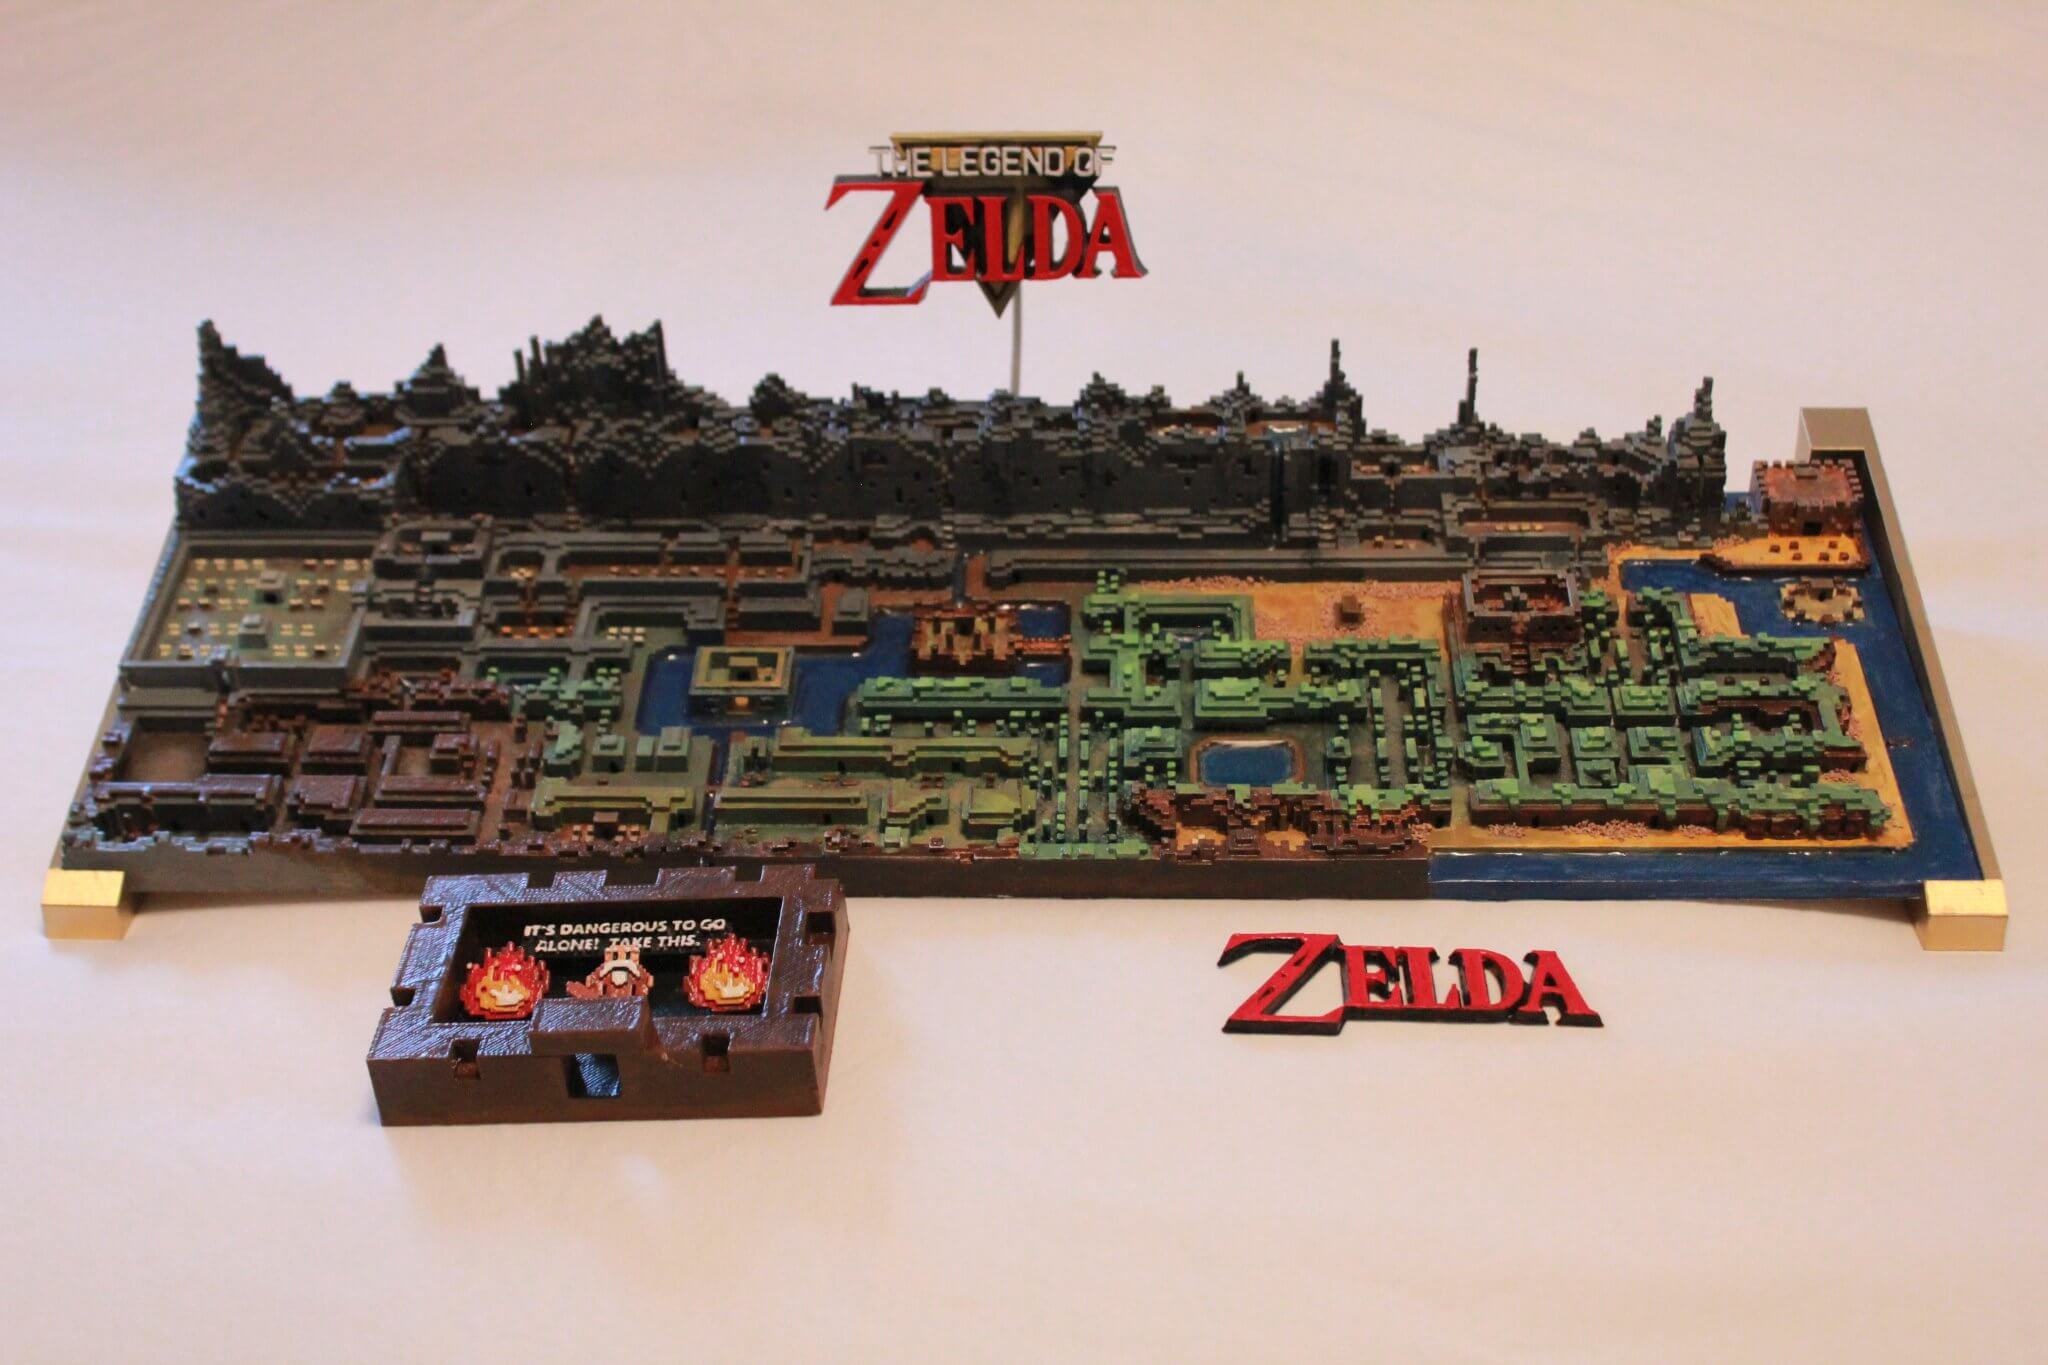 Mapa de The Legend of Zelda feito em impressora 3D